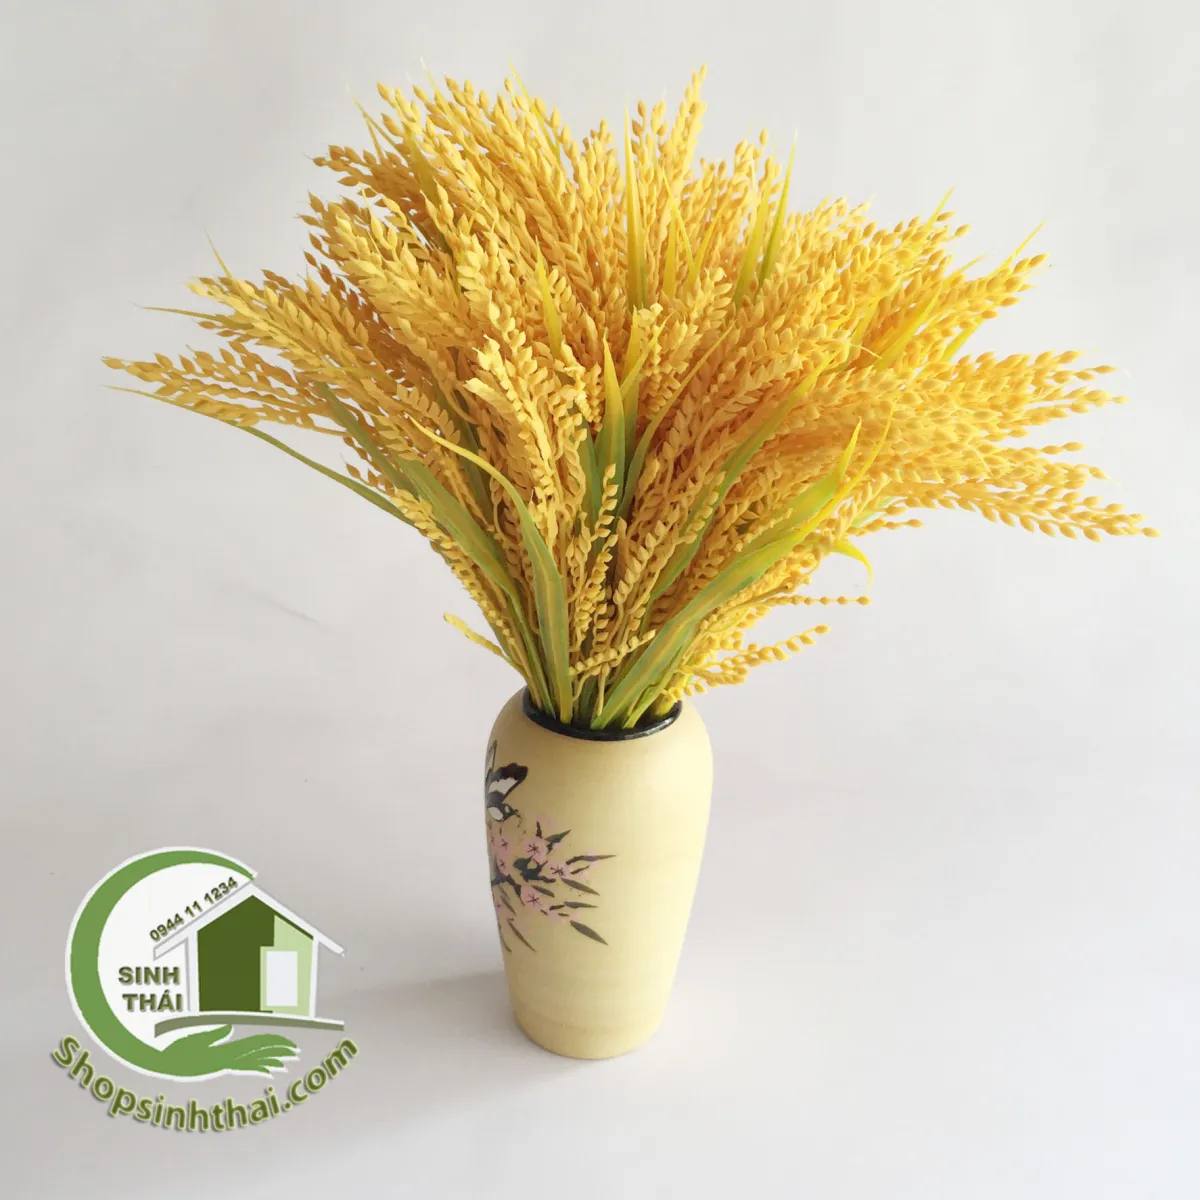 HCM]Bụi cây bông lúa vàng - cây hoa giả trang trí nhà cửa - phụ ...